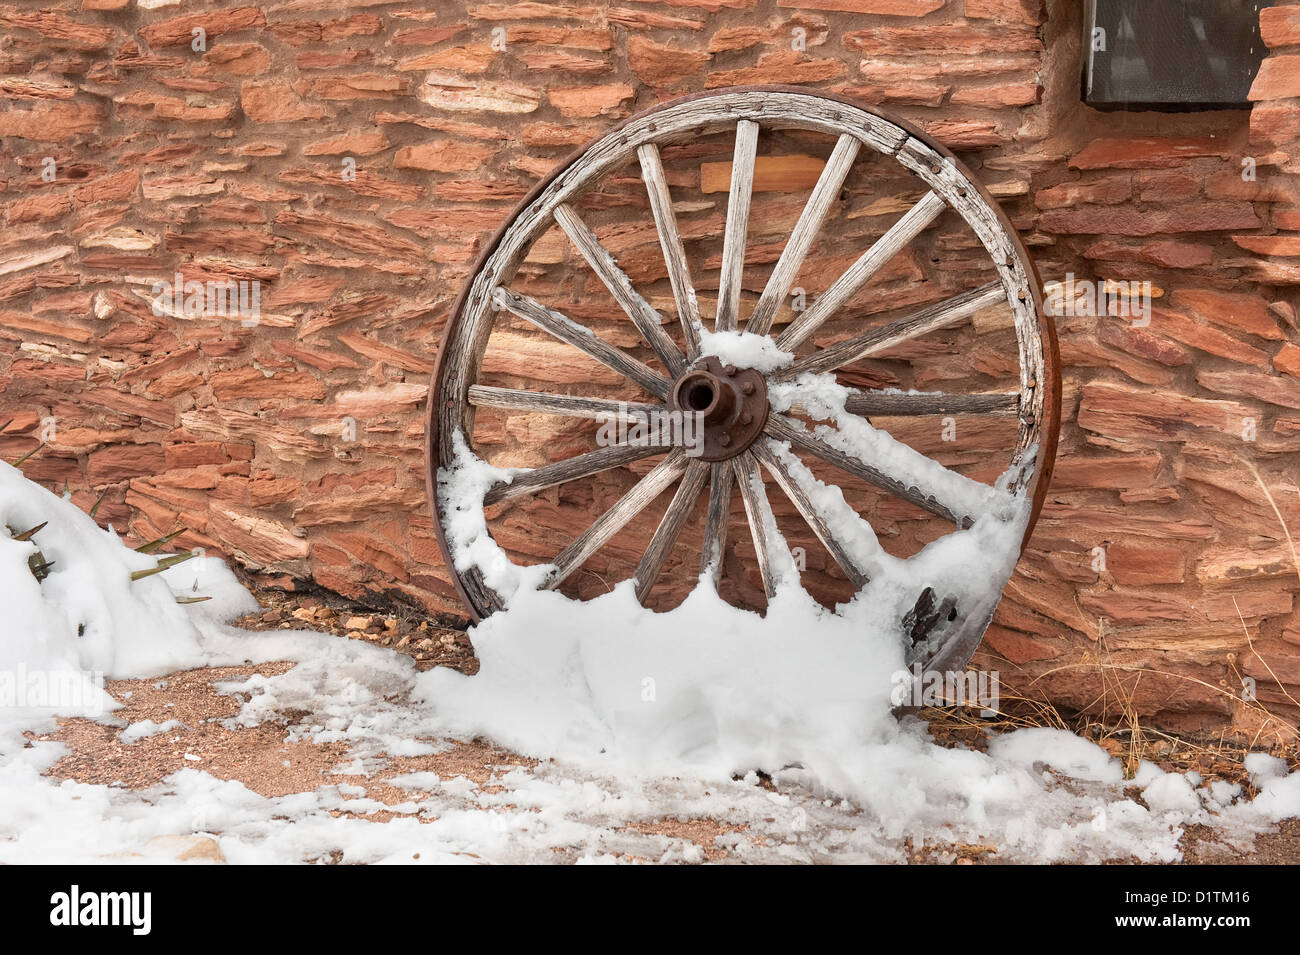 Eine alte, antike Wagenrad mit Schnee bedeckt ruht einer Ranch Anlage Wand. Stockfoto